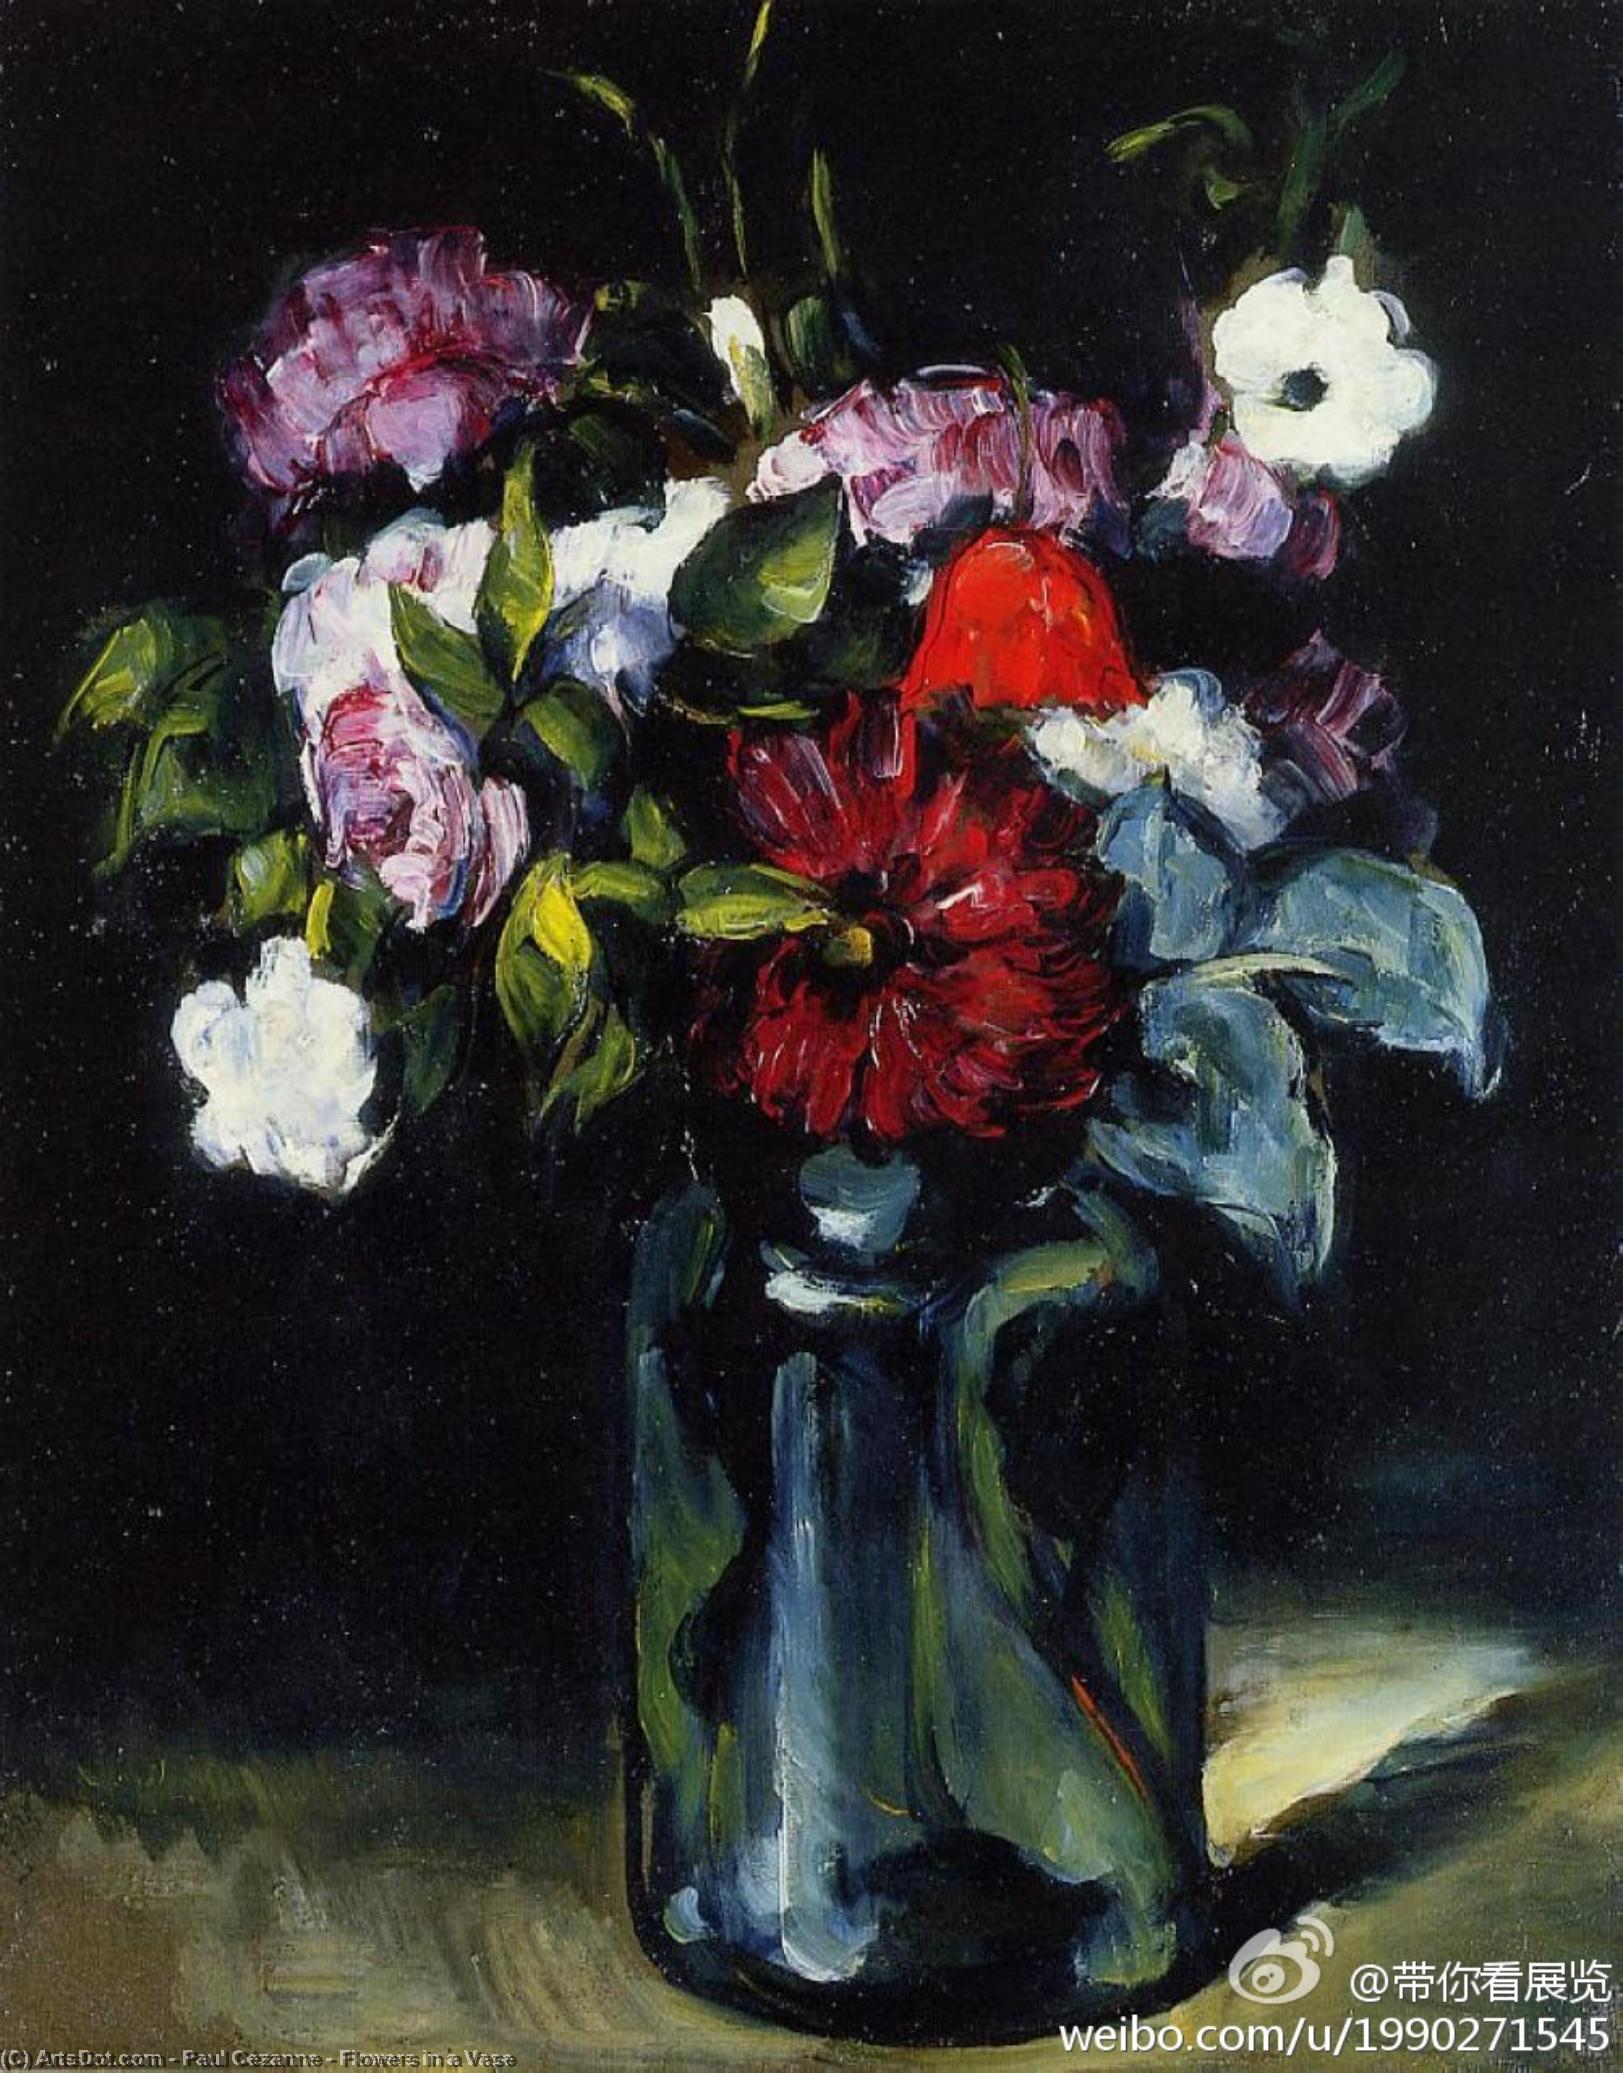 WikiOO.org - Encyclopedia of Fine Arts - Maleri, Artwork Paul Cezanne - Flowers in a Vase